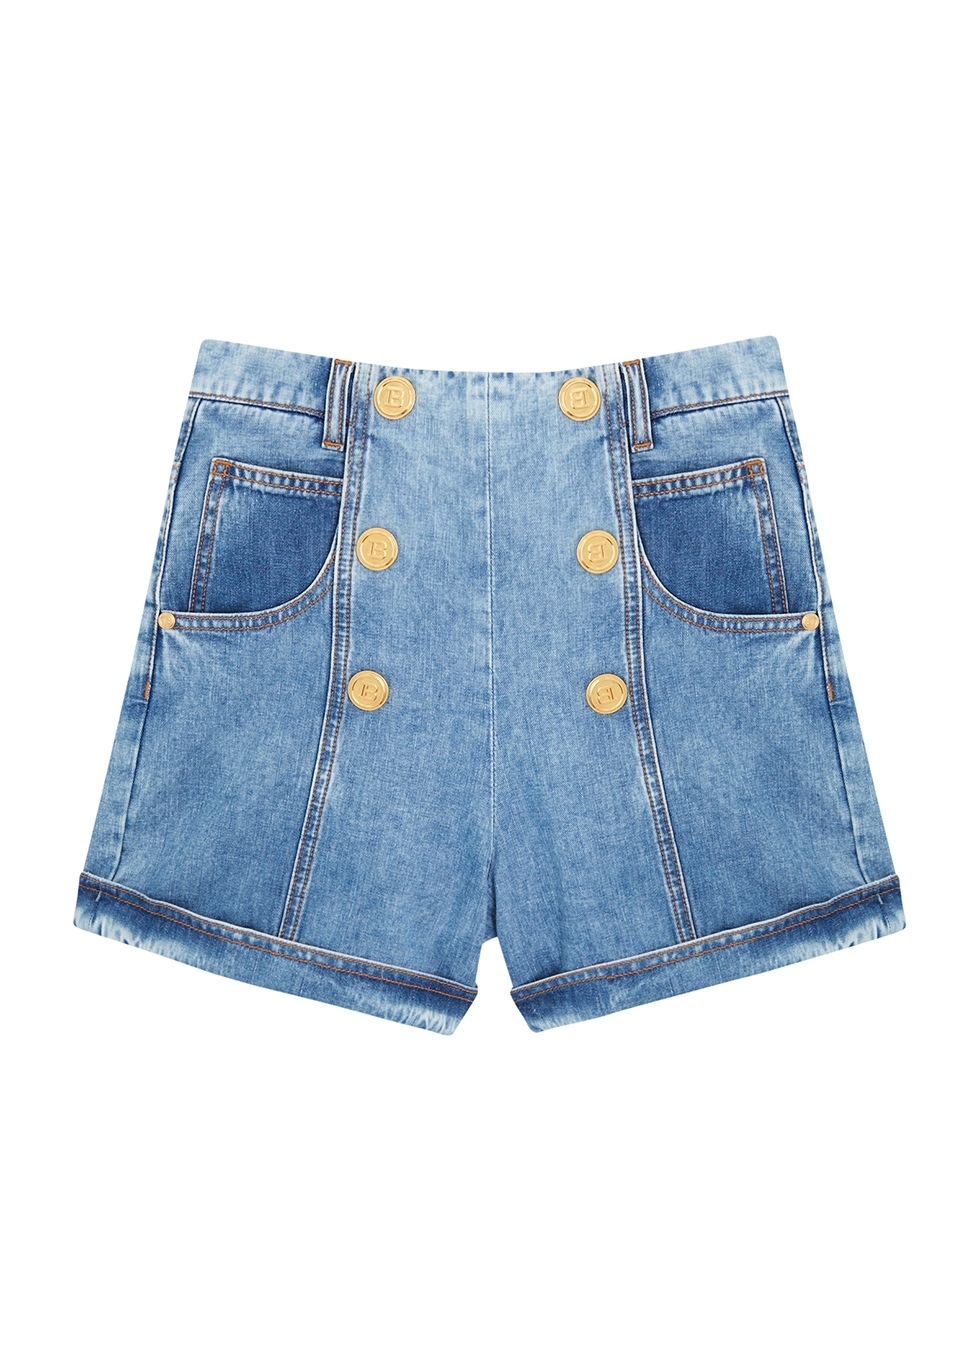 KIDS Blue denim shorts (14-16 years)